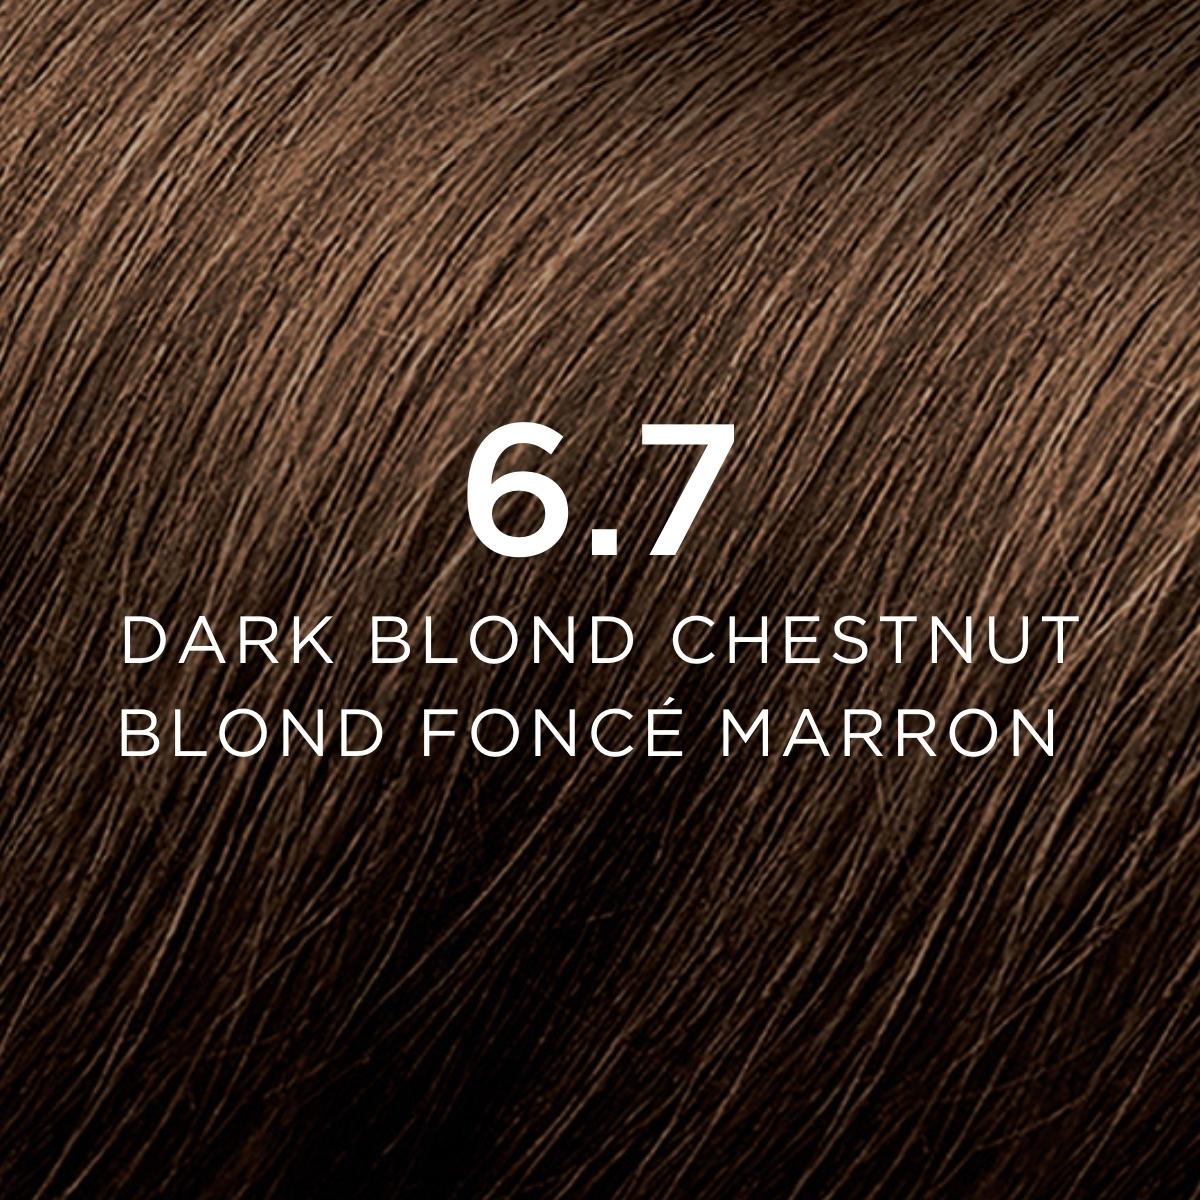 6.7 Blond foncé marron